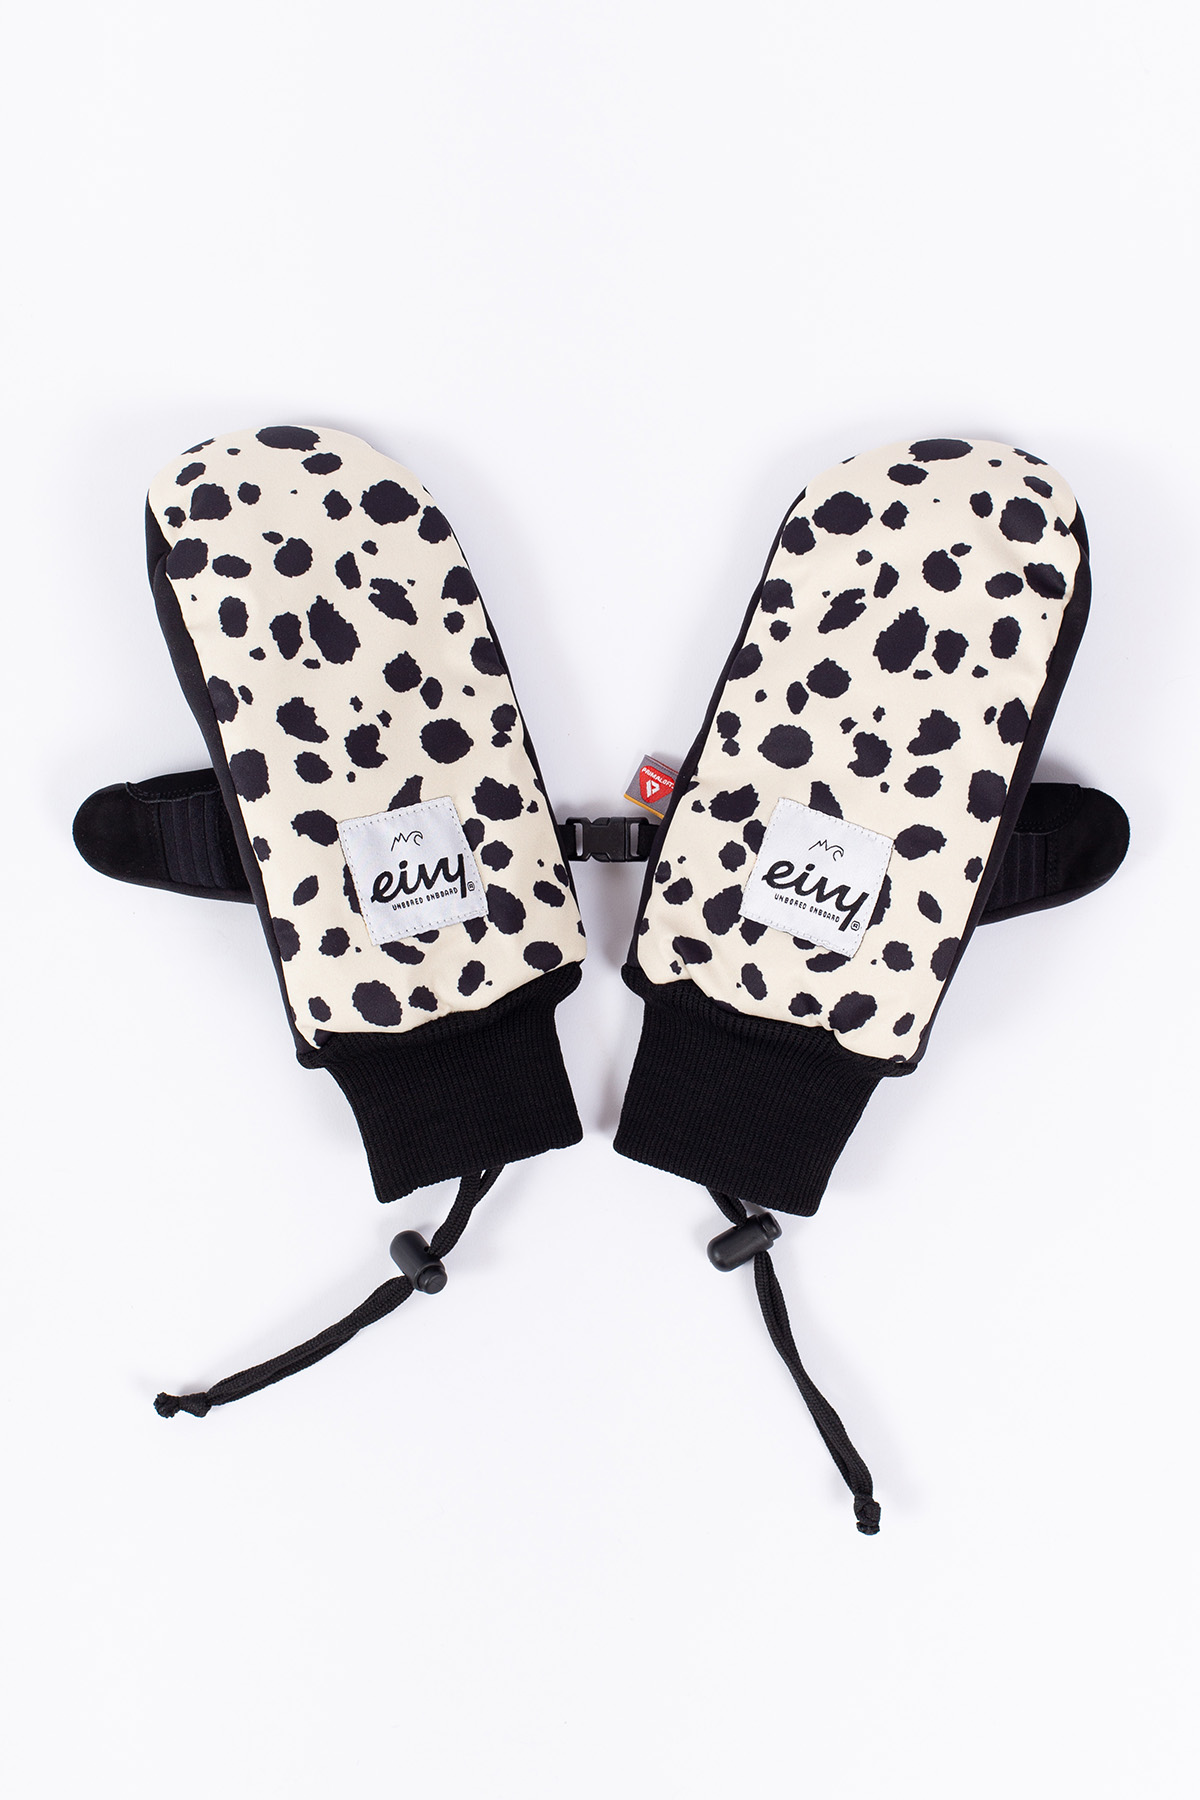 Eivy x Transform Gloves - Cheetah